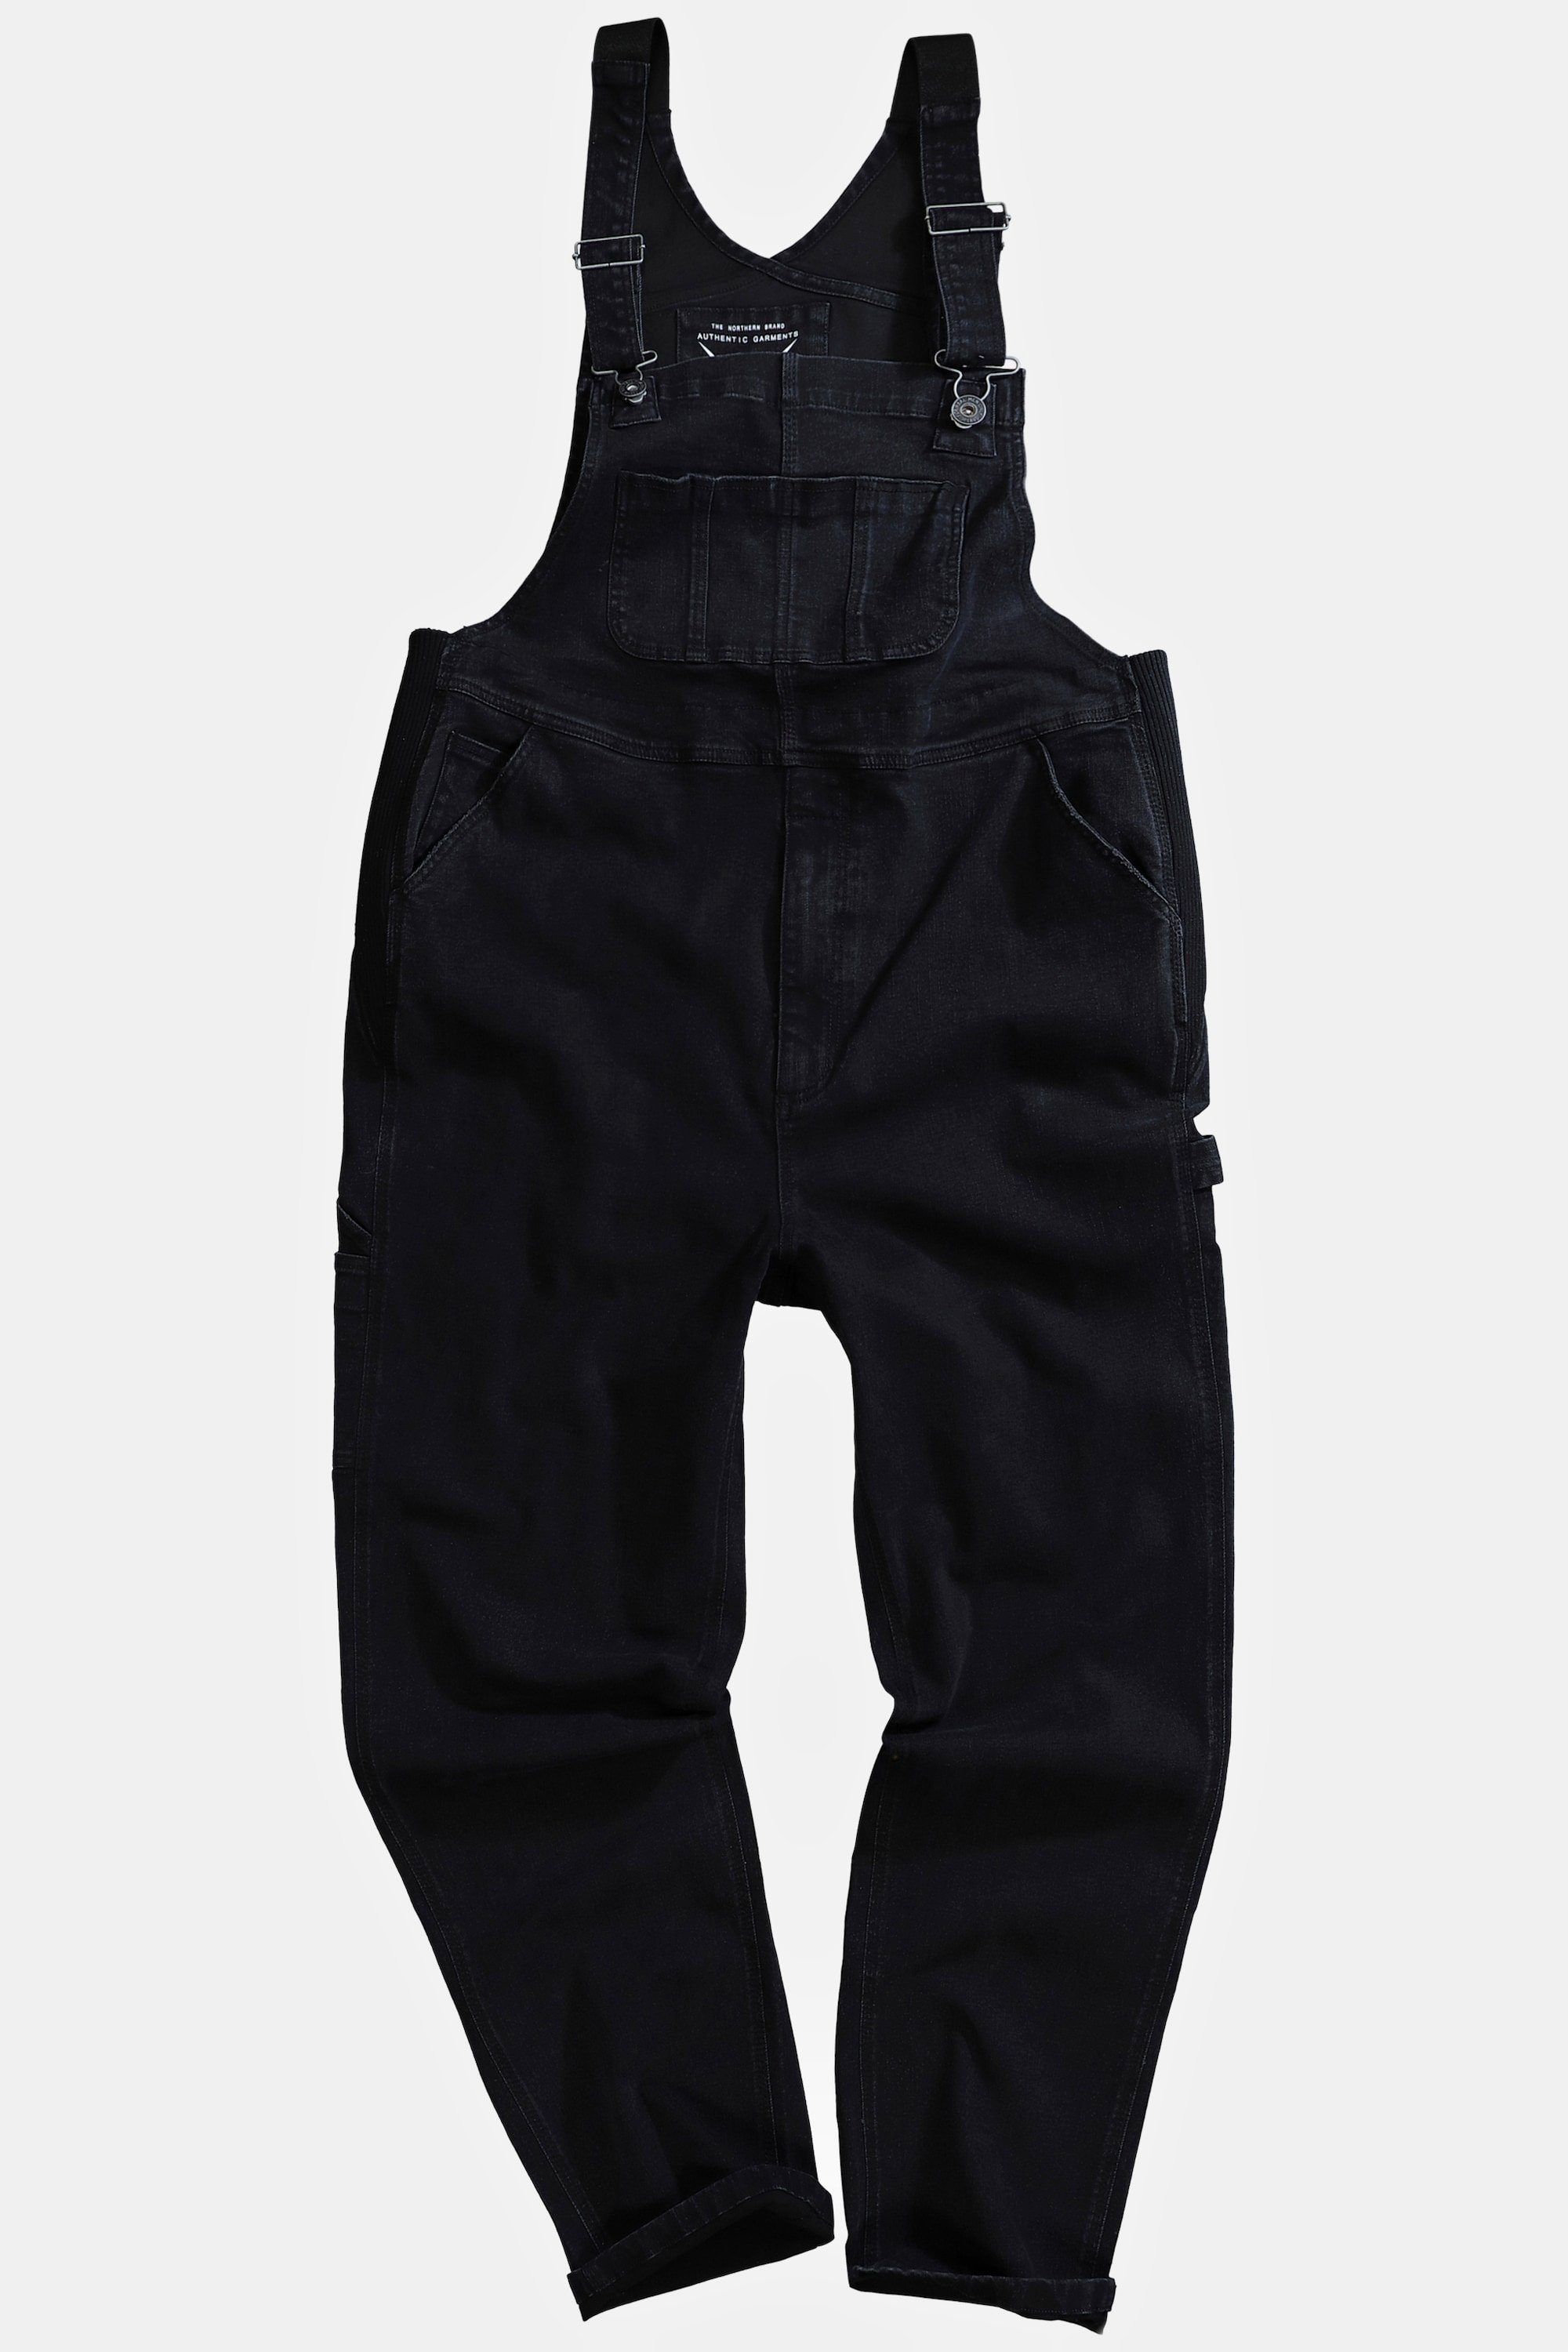 Cargohose Latzhose schwarz Relaxed Workwear Jeans Fit viele Taschen JP1880